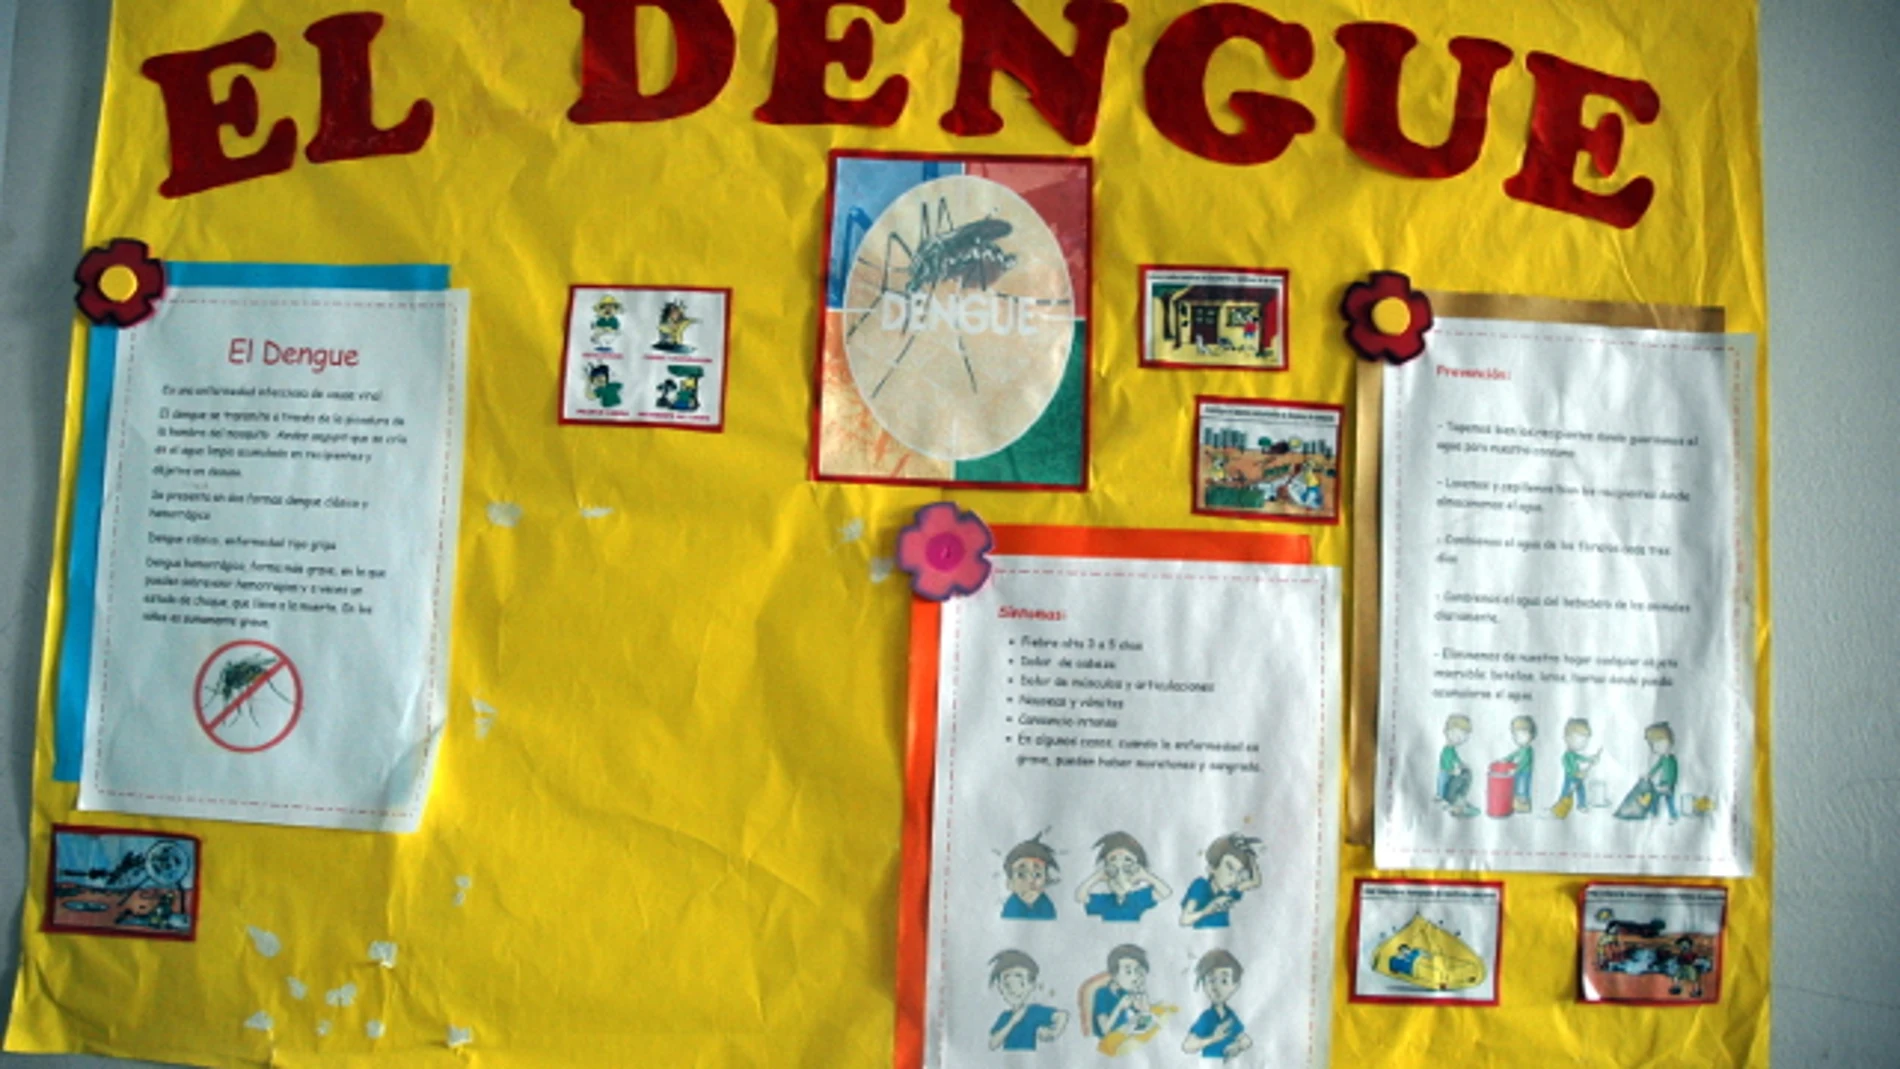 Anesvad prueba una app para combatir la enfermedad del dengue